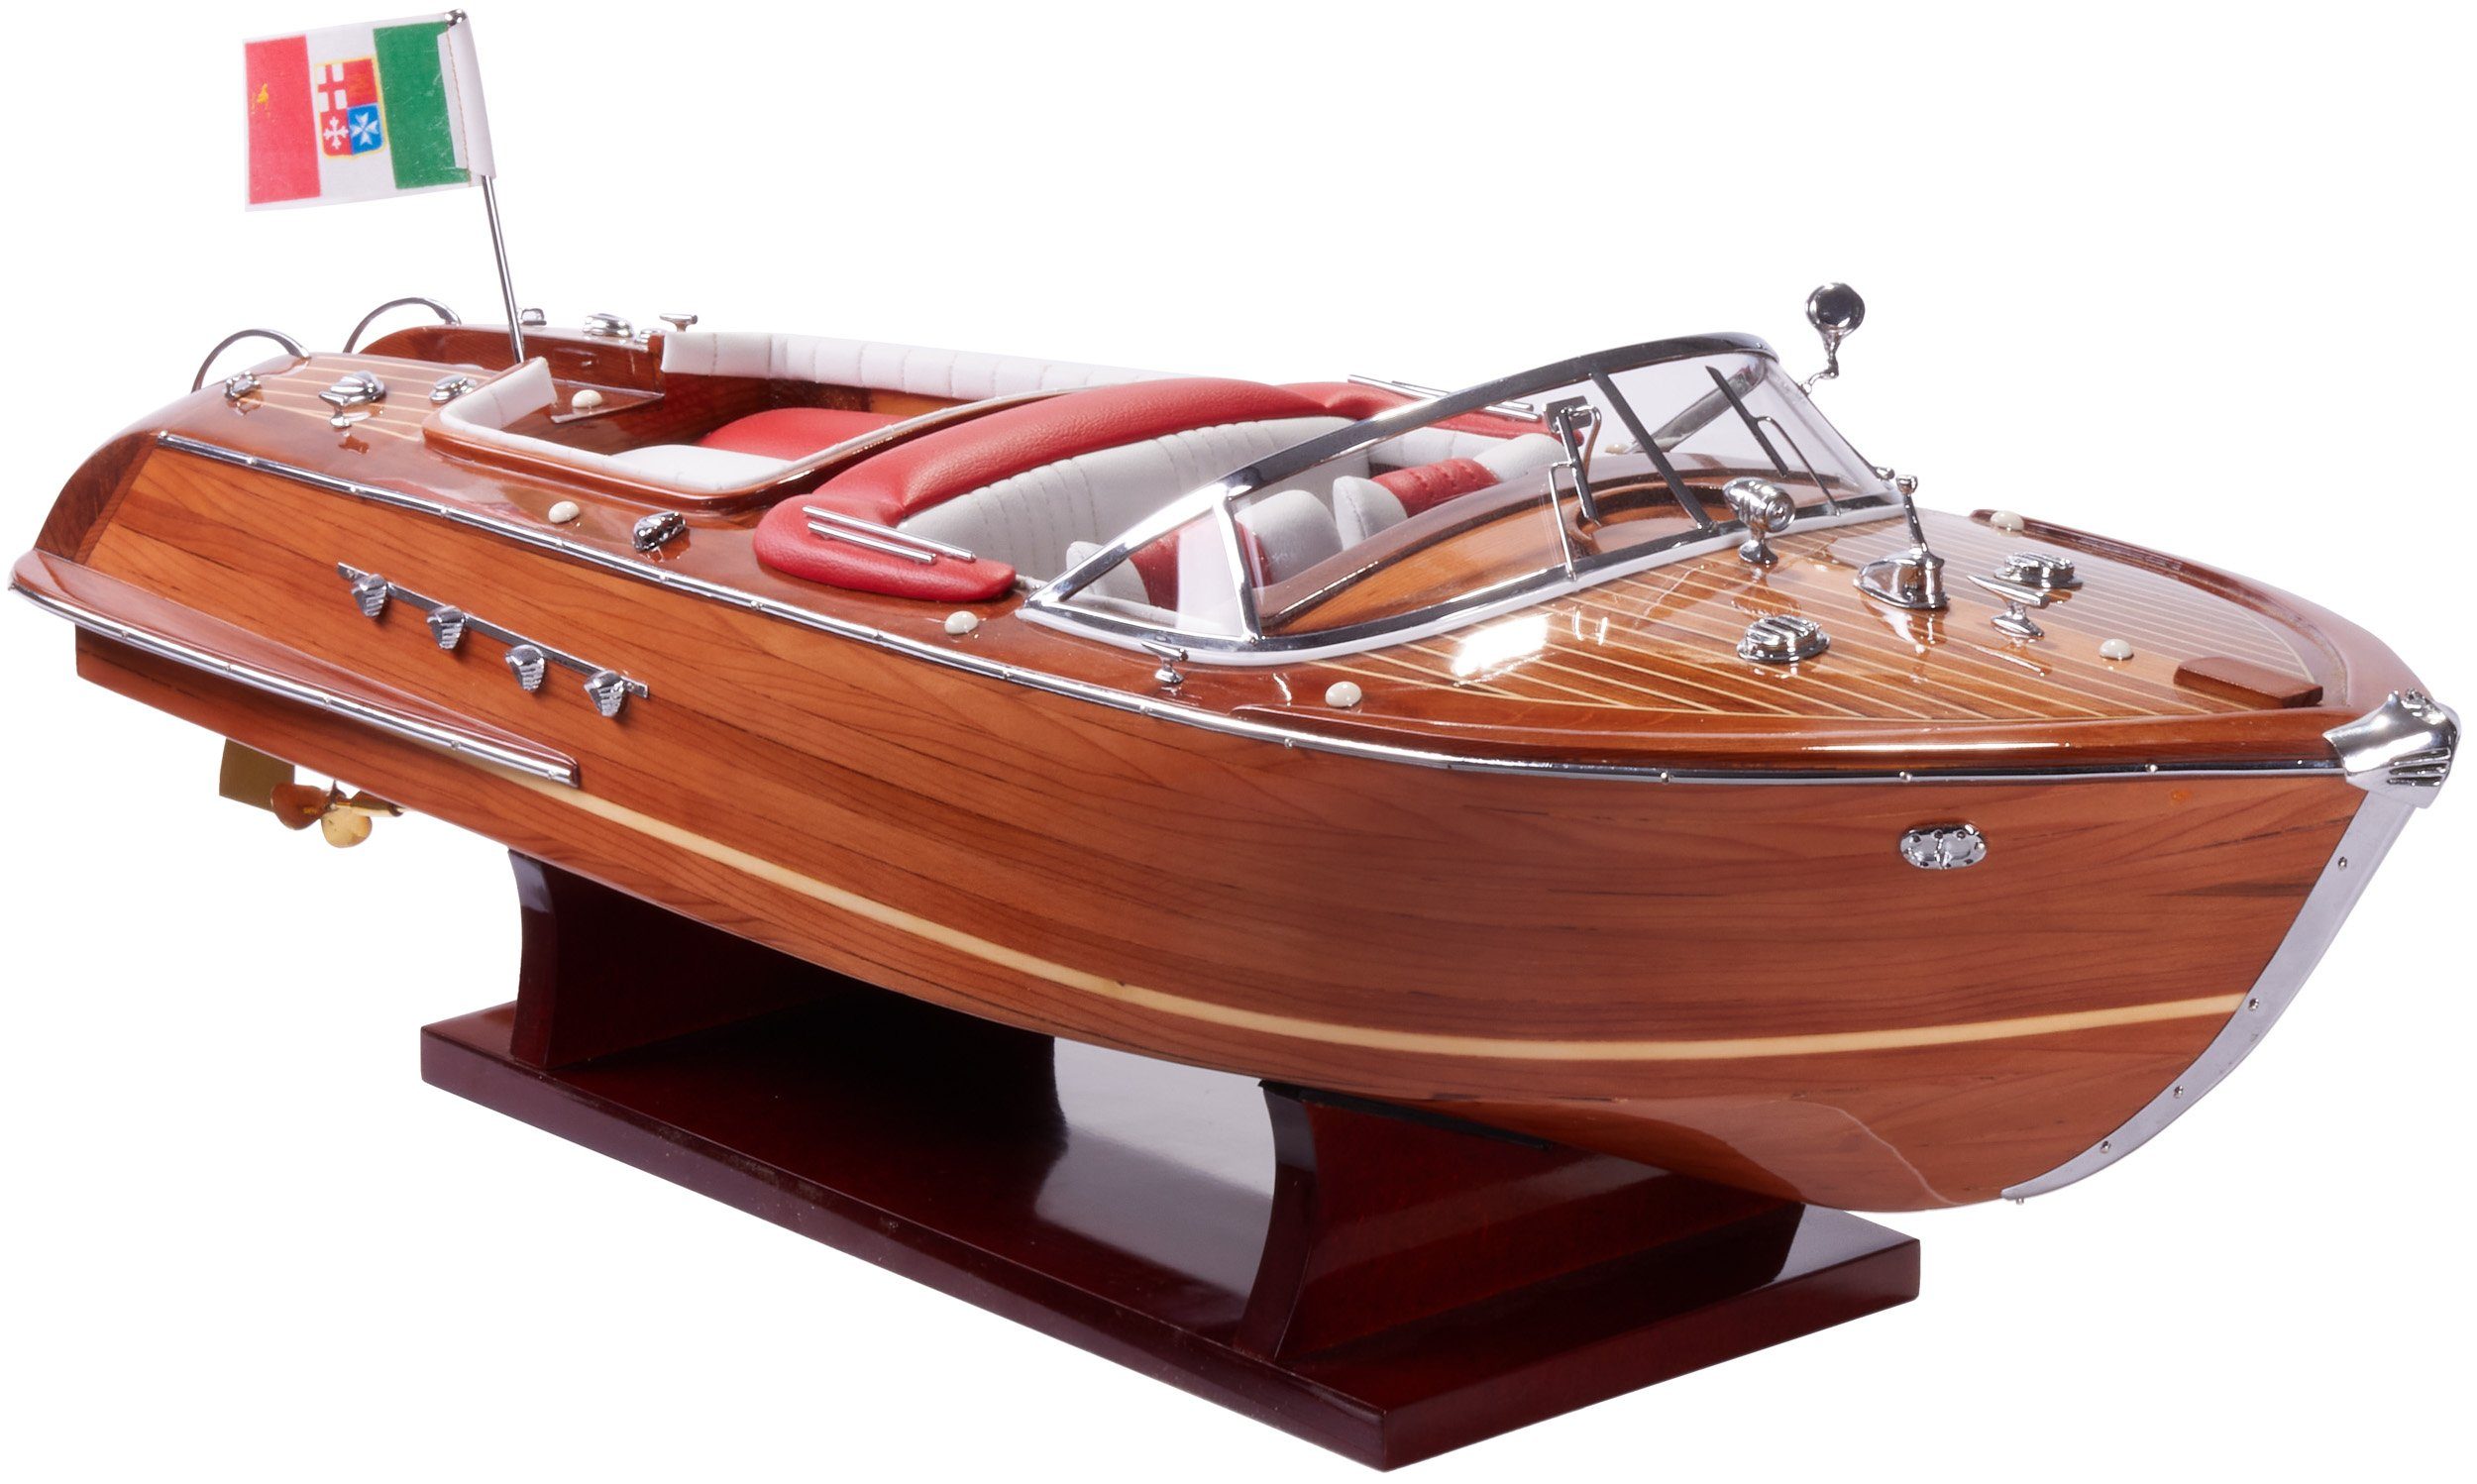 Holz Modellboot Größe 35 x 11 x 13 cm Boot Modell Italienisches Motorboot 